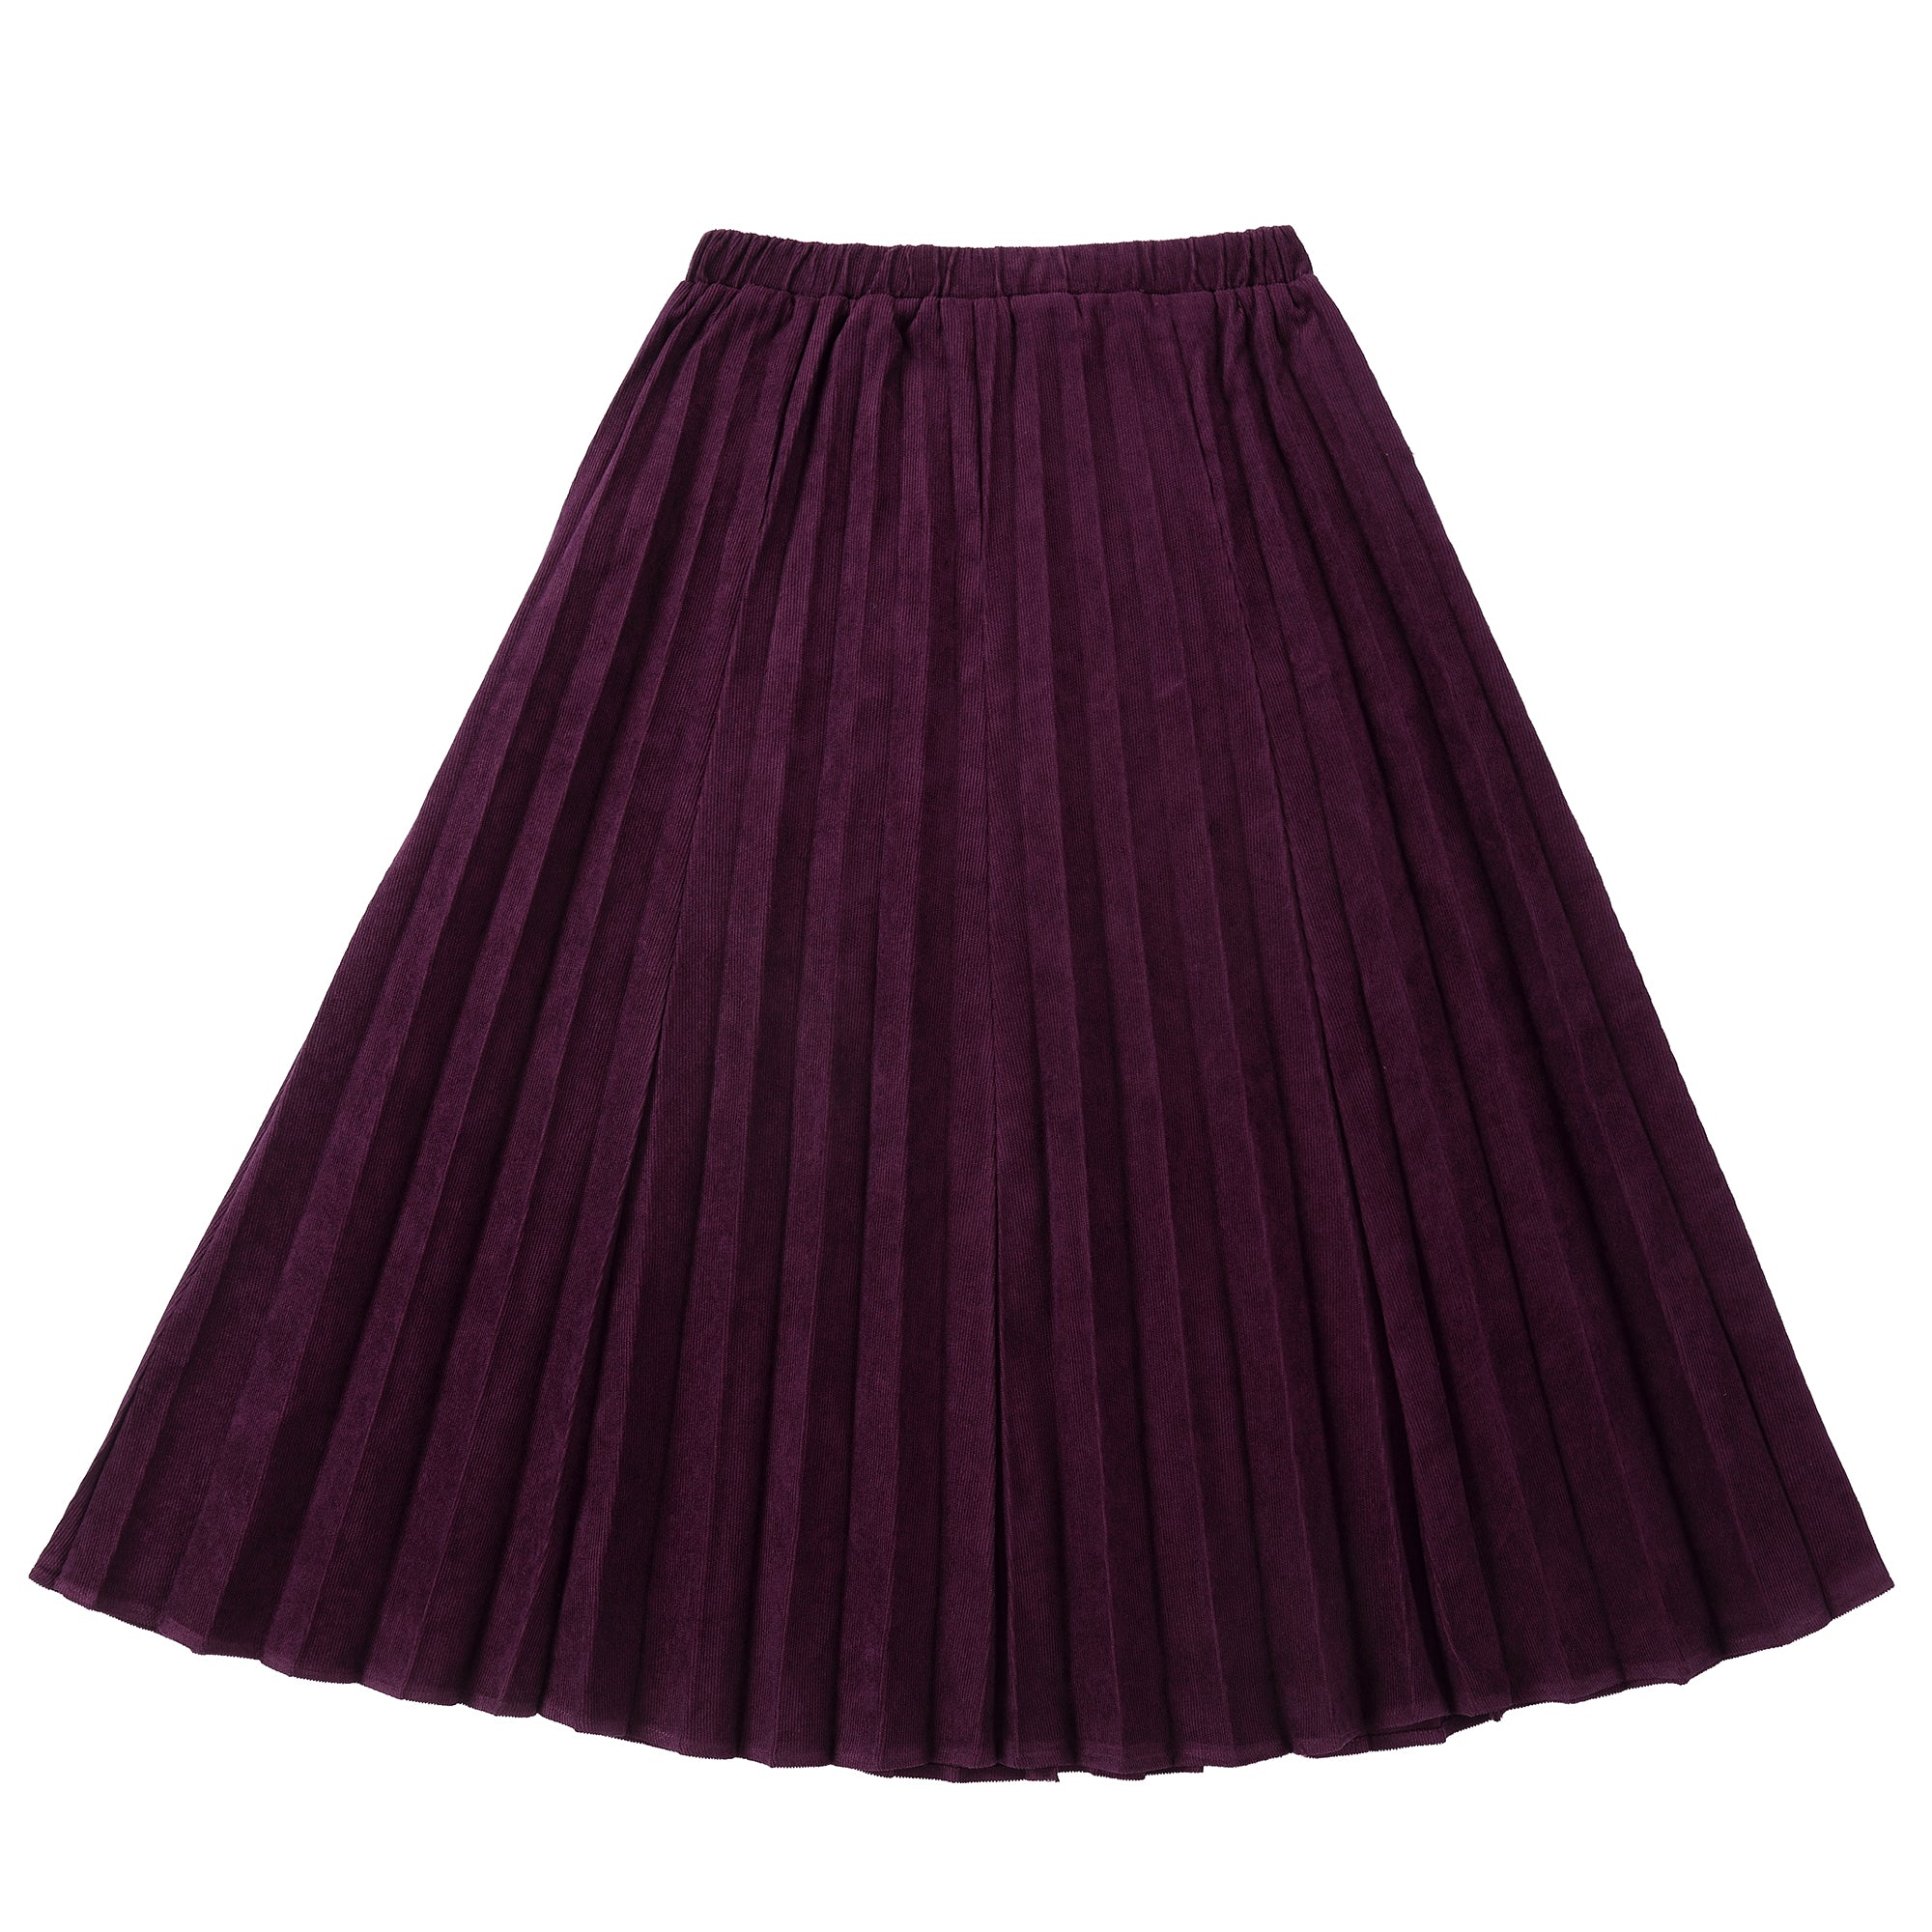 Plum Corduroy Midi Sunburst Pleat Skirt